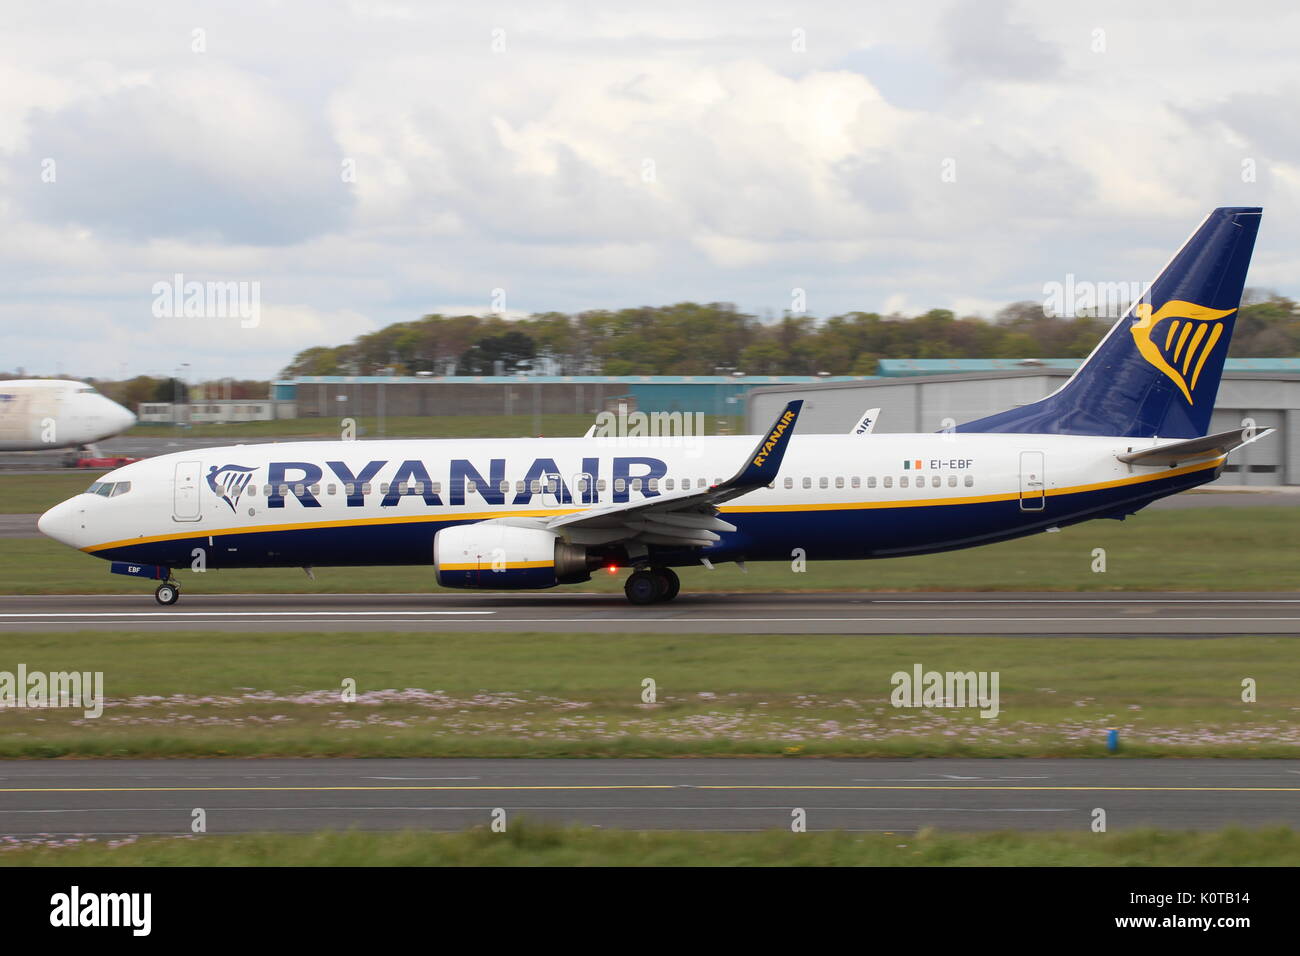 EI-EBF, un Boeing 737-8come operati da Ryanair, a Prestwick International Airport in Ayrshire. Foto Stock